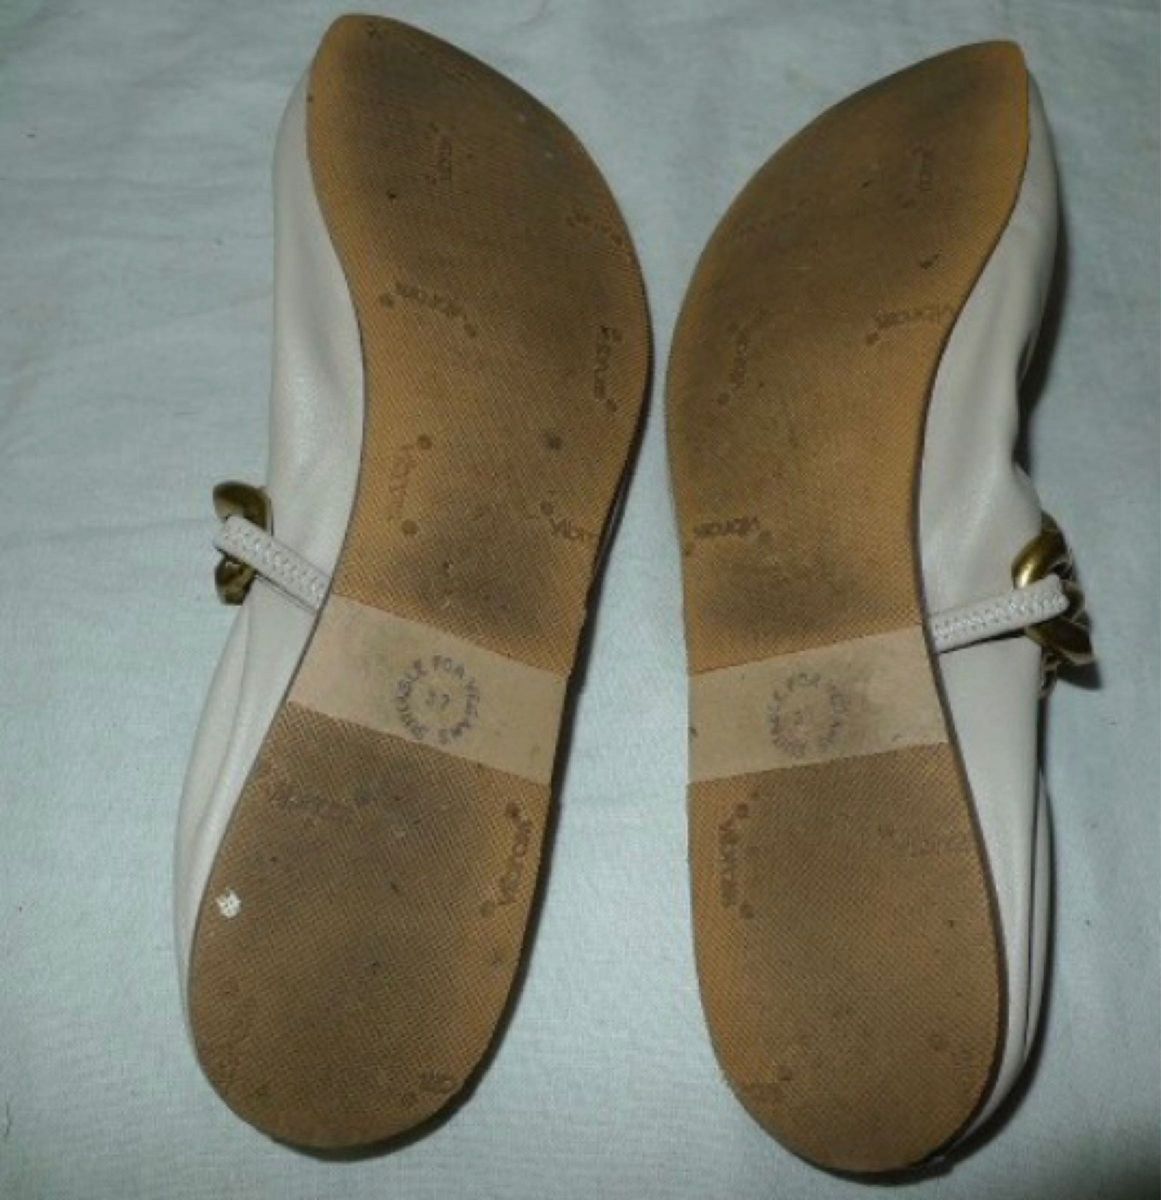 【SALE】比較的美品 Stella McCartneyステラマッカートニー チェーン付バレエシューズ フラット 靴 パンプス